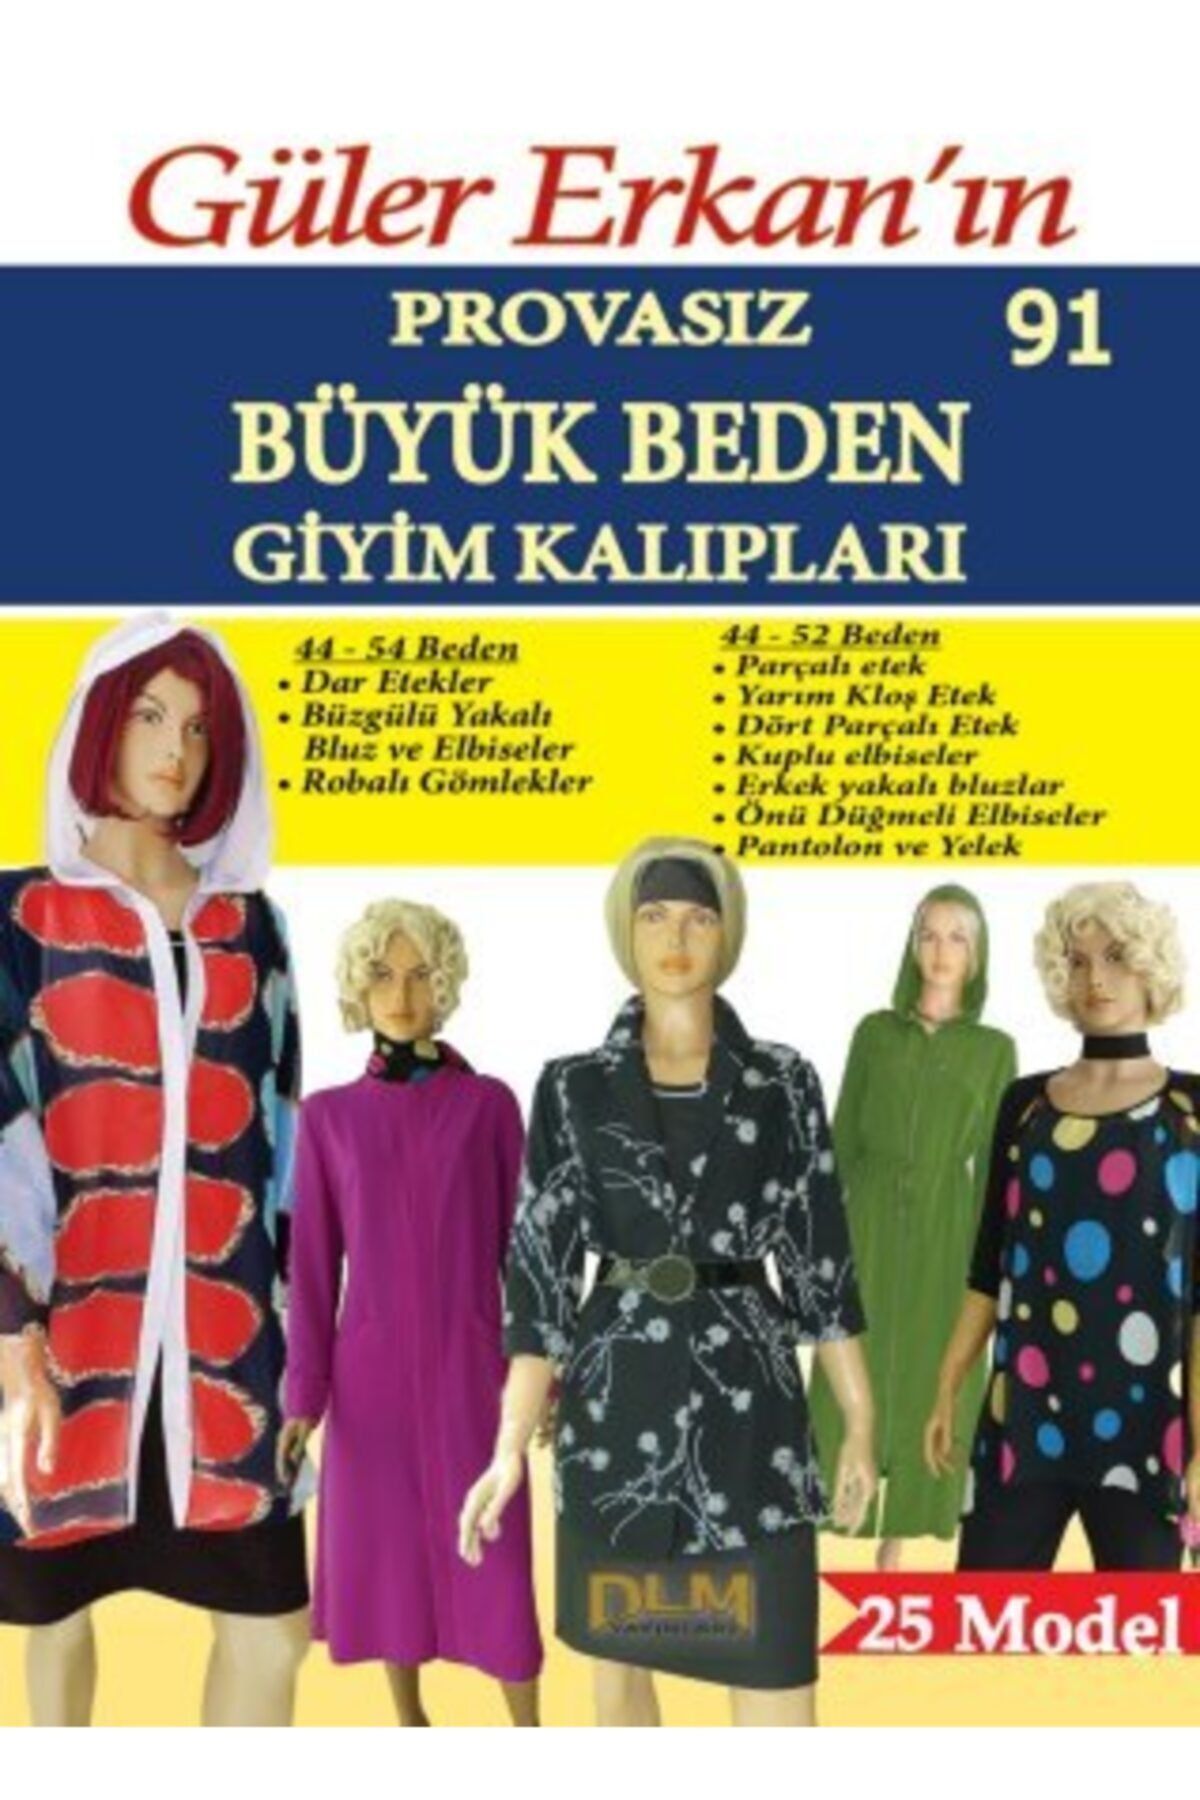 Dilem Yayınları Güler Erkan Provasız Büyük Beden Giyim Kalıpları No:91